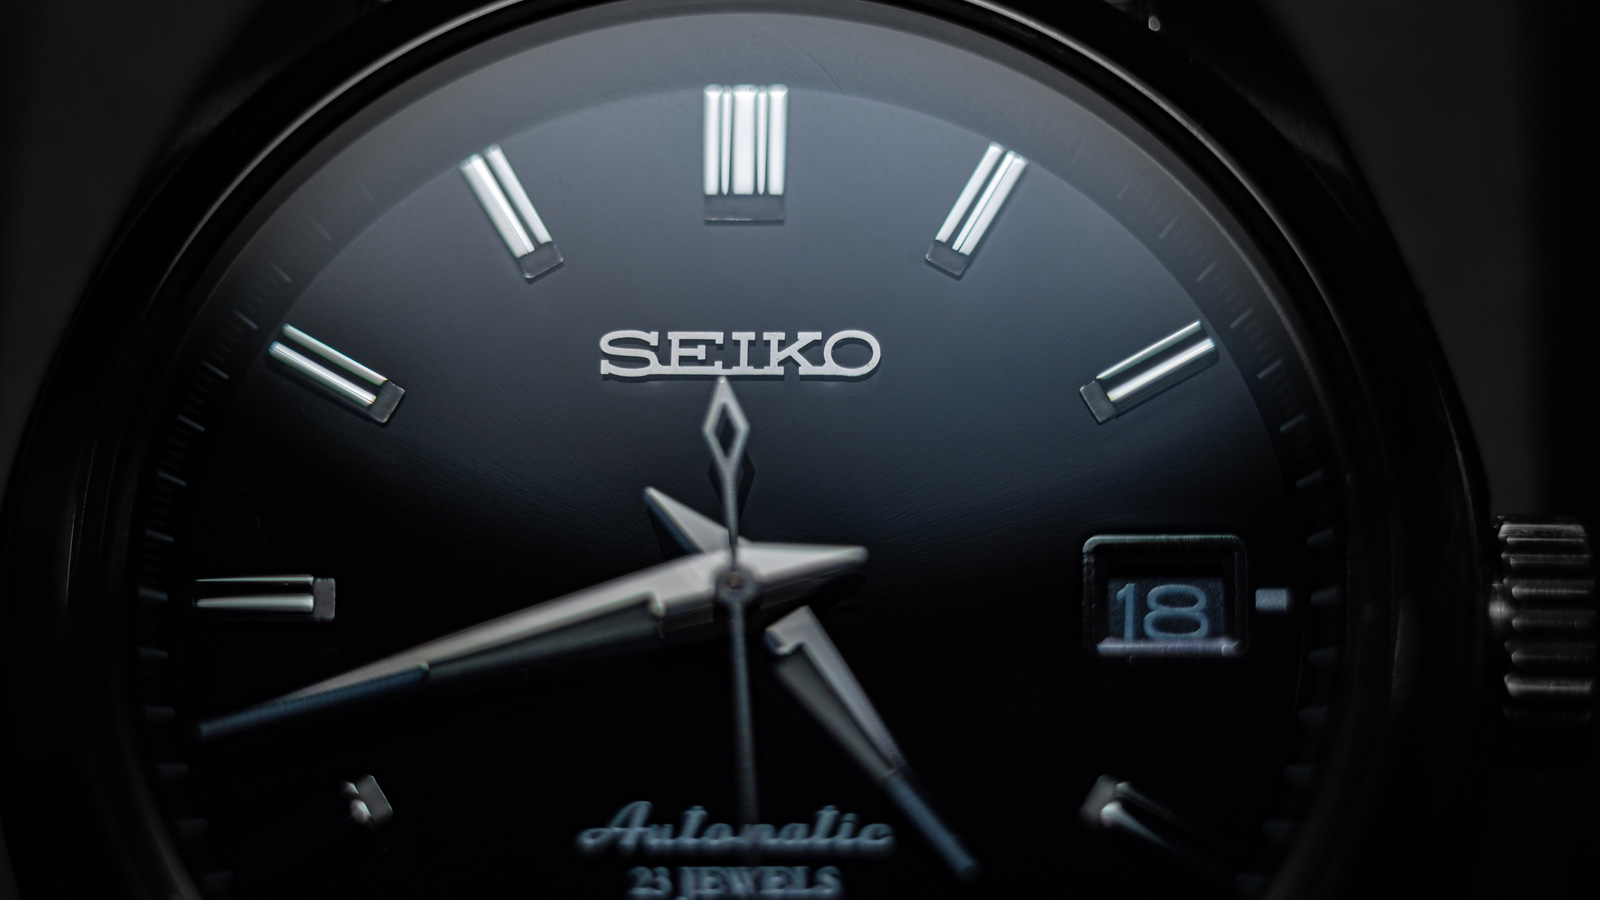 Seiko watch